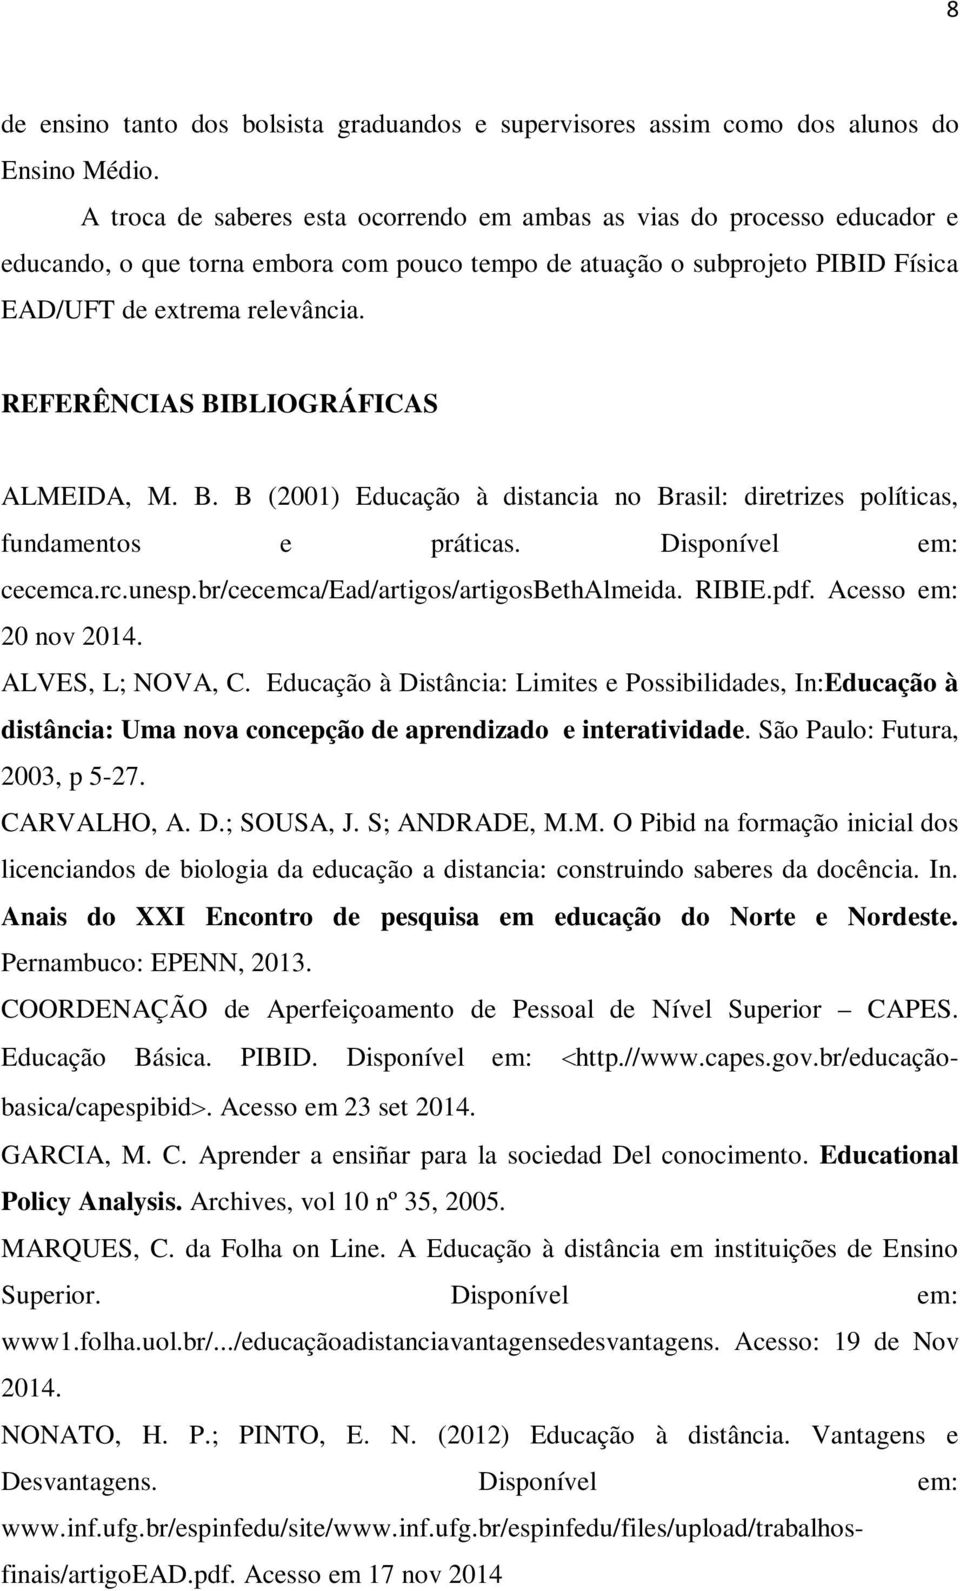 REFERÊNCIAS BIBLIOGRÁFICAS ALMEIDA, M. B. B (2001) Educação à distancia no Brasil: diretrizes políticas, fundamentos e práticas. Disponível em: cecemca.rc.unesp.